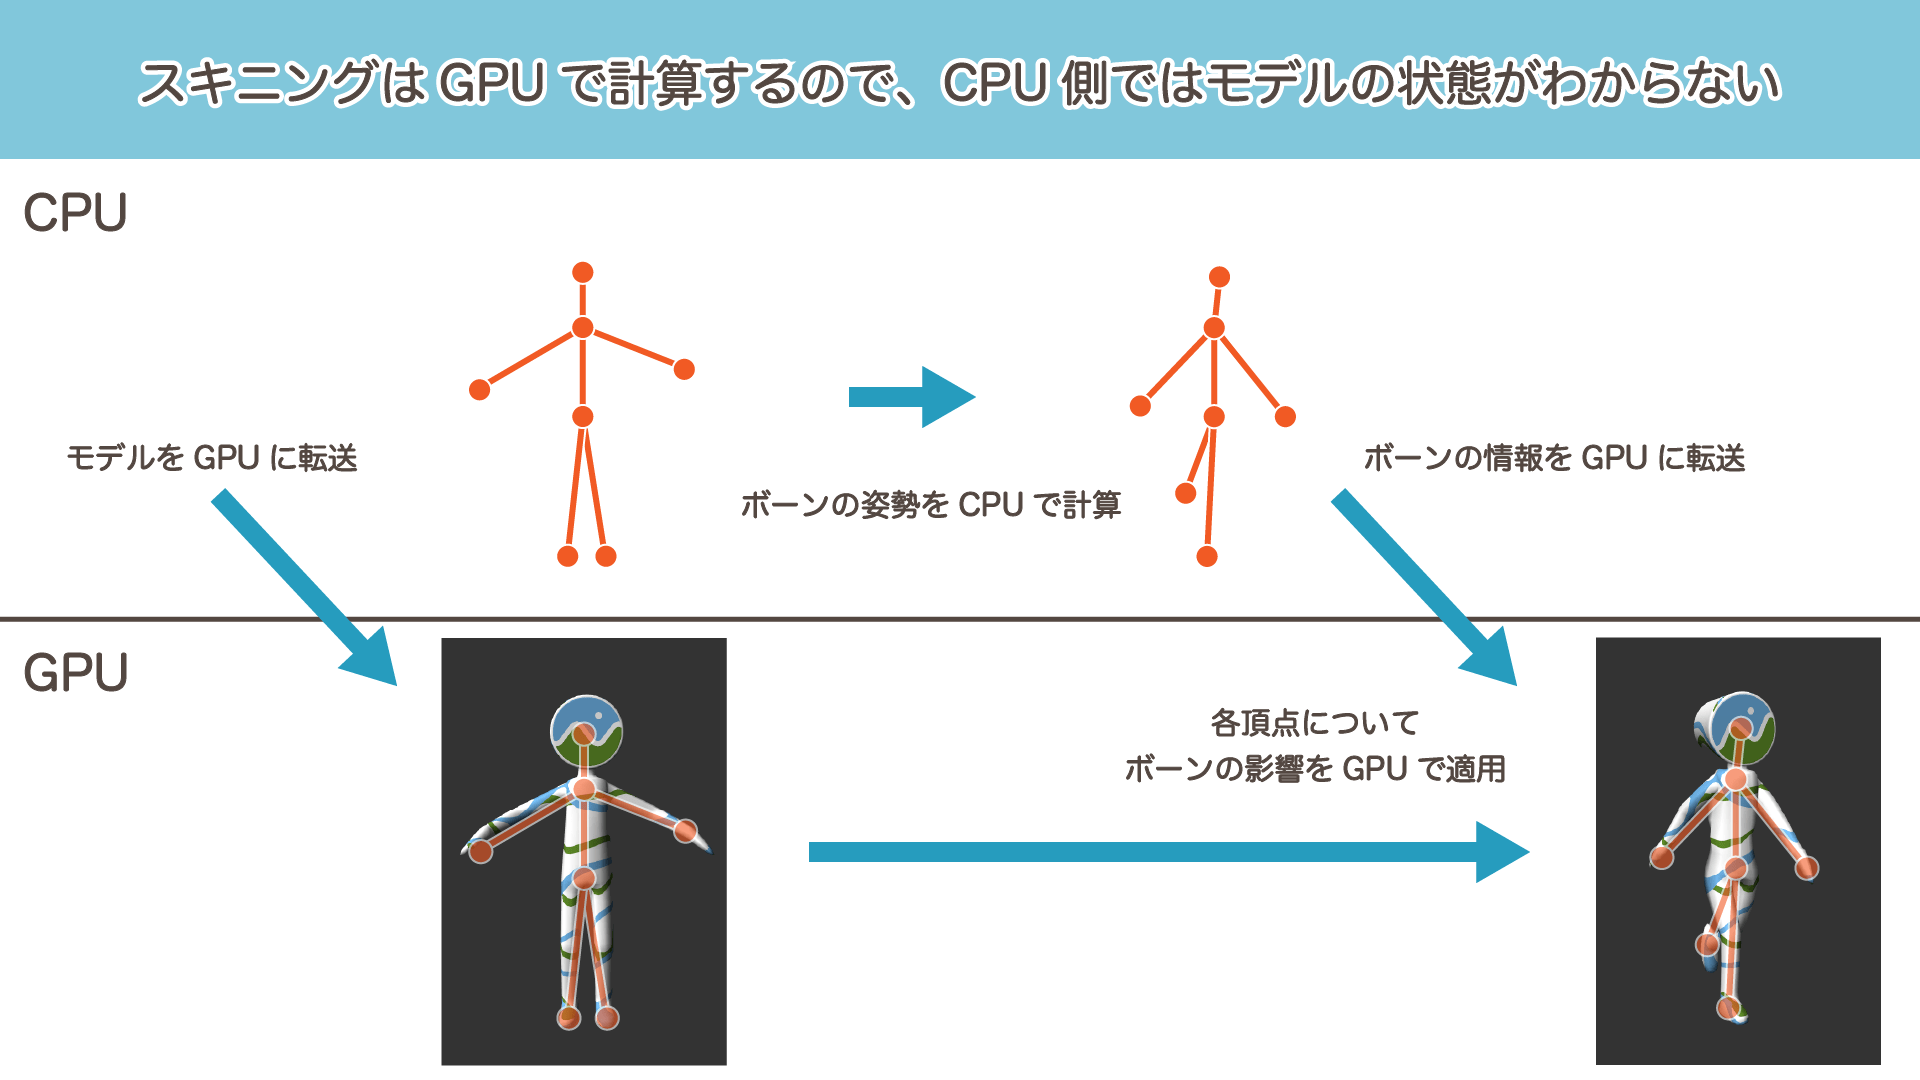 スキニング結果はGPUにしかないため、CPUからは正確な3Dモデルの占める領域がわからない